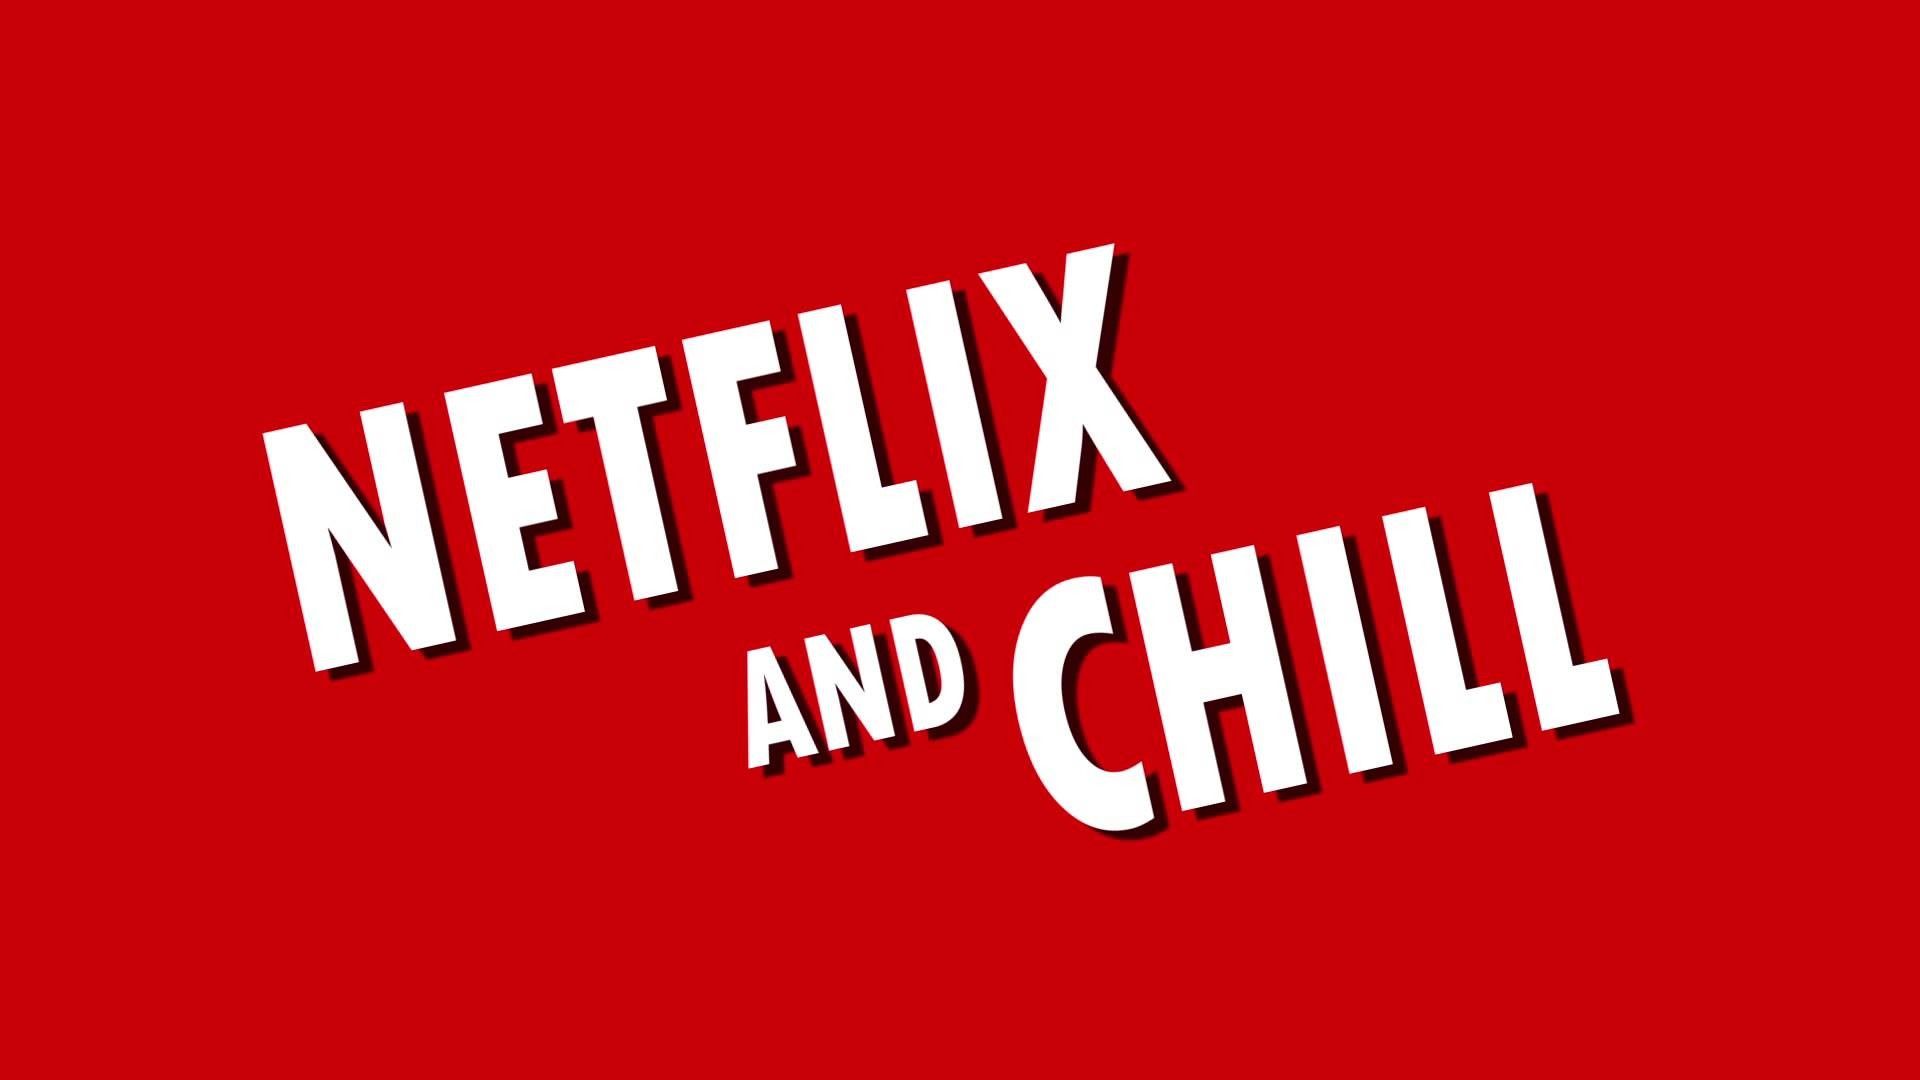 Netflix and chill - Netflix